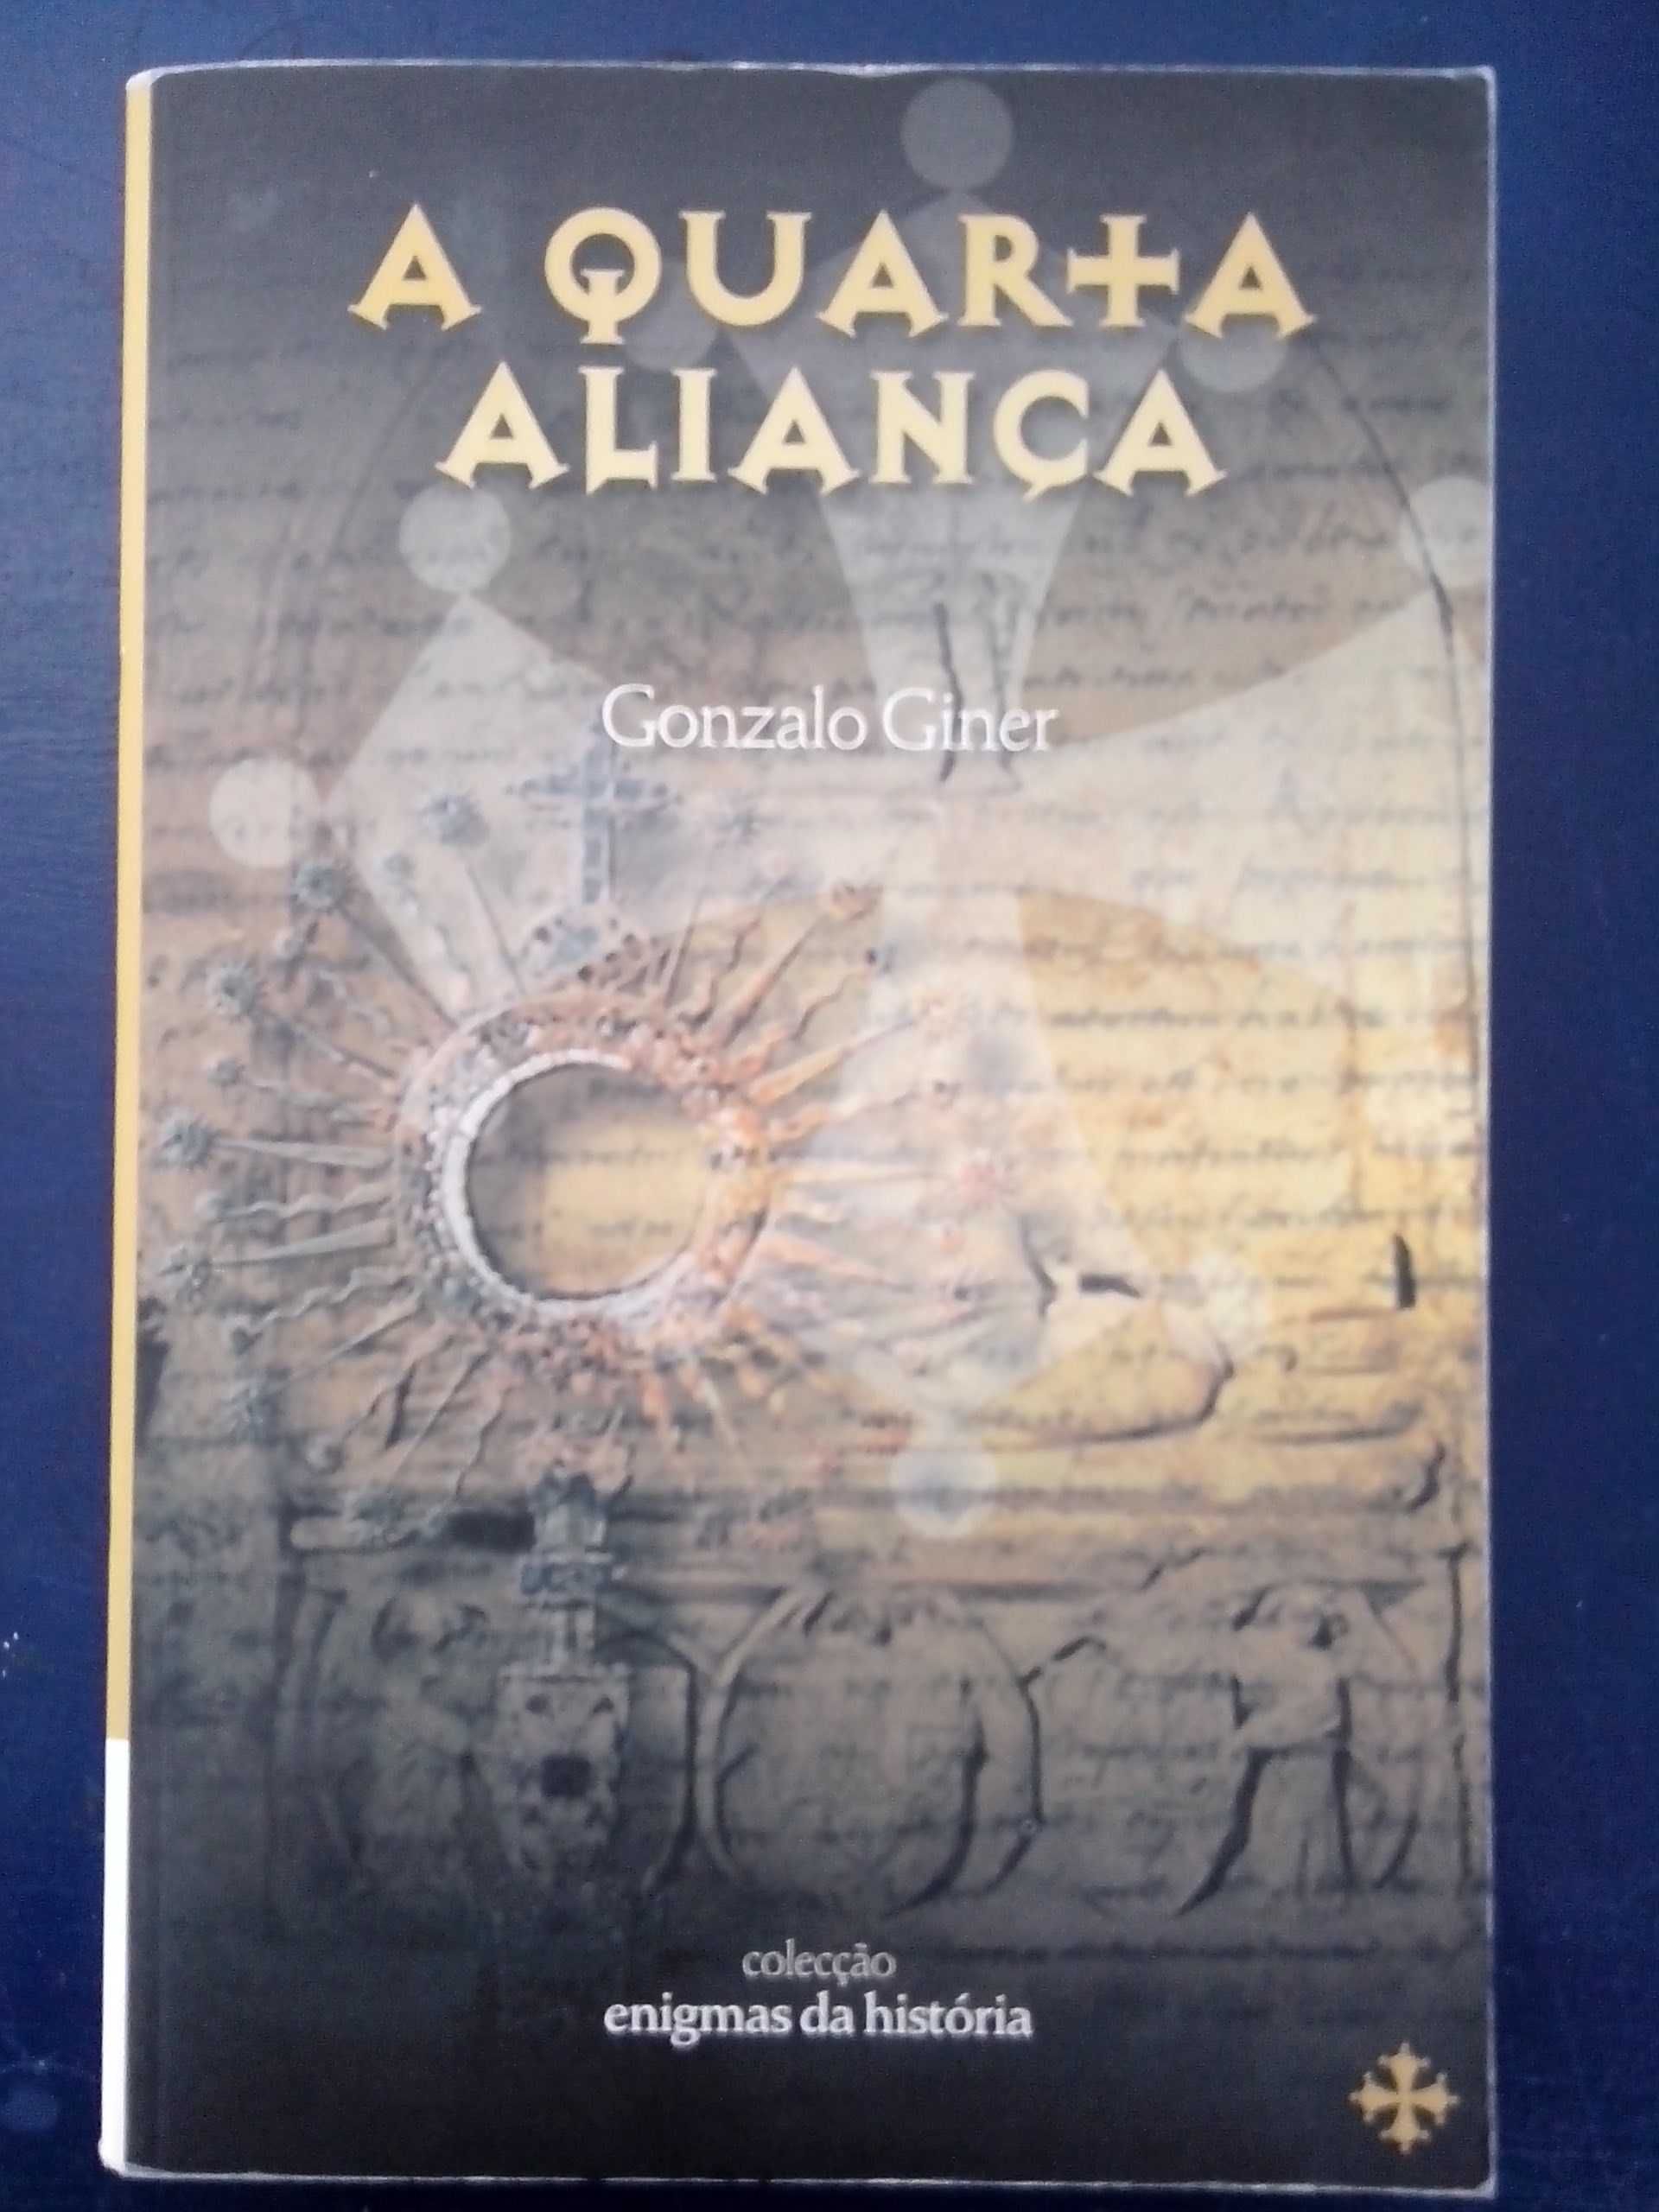 Livro "A quarta Aliança" de Gonzalo Giner